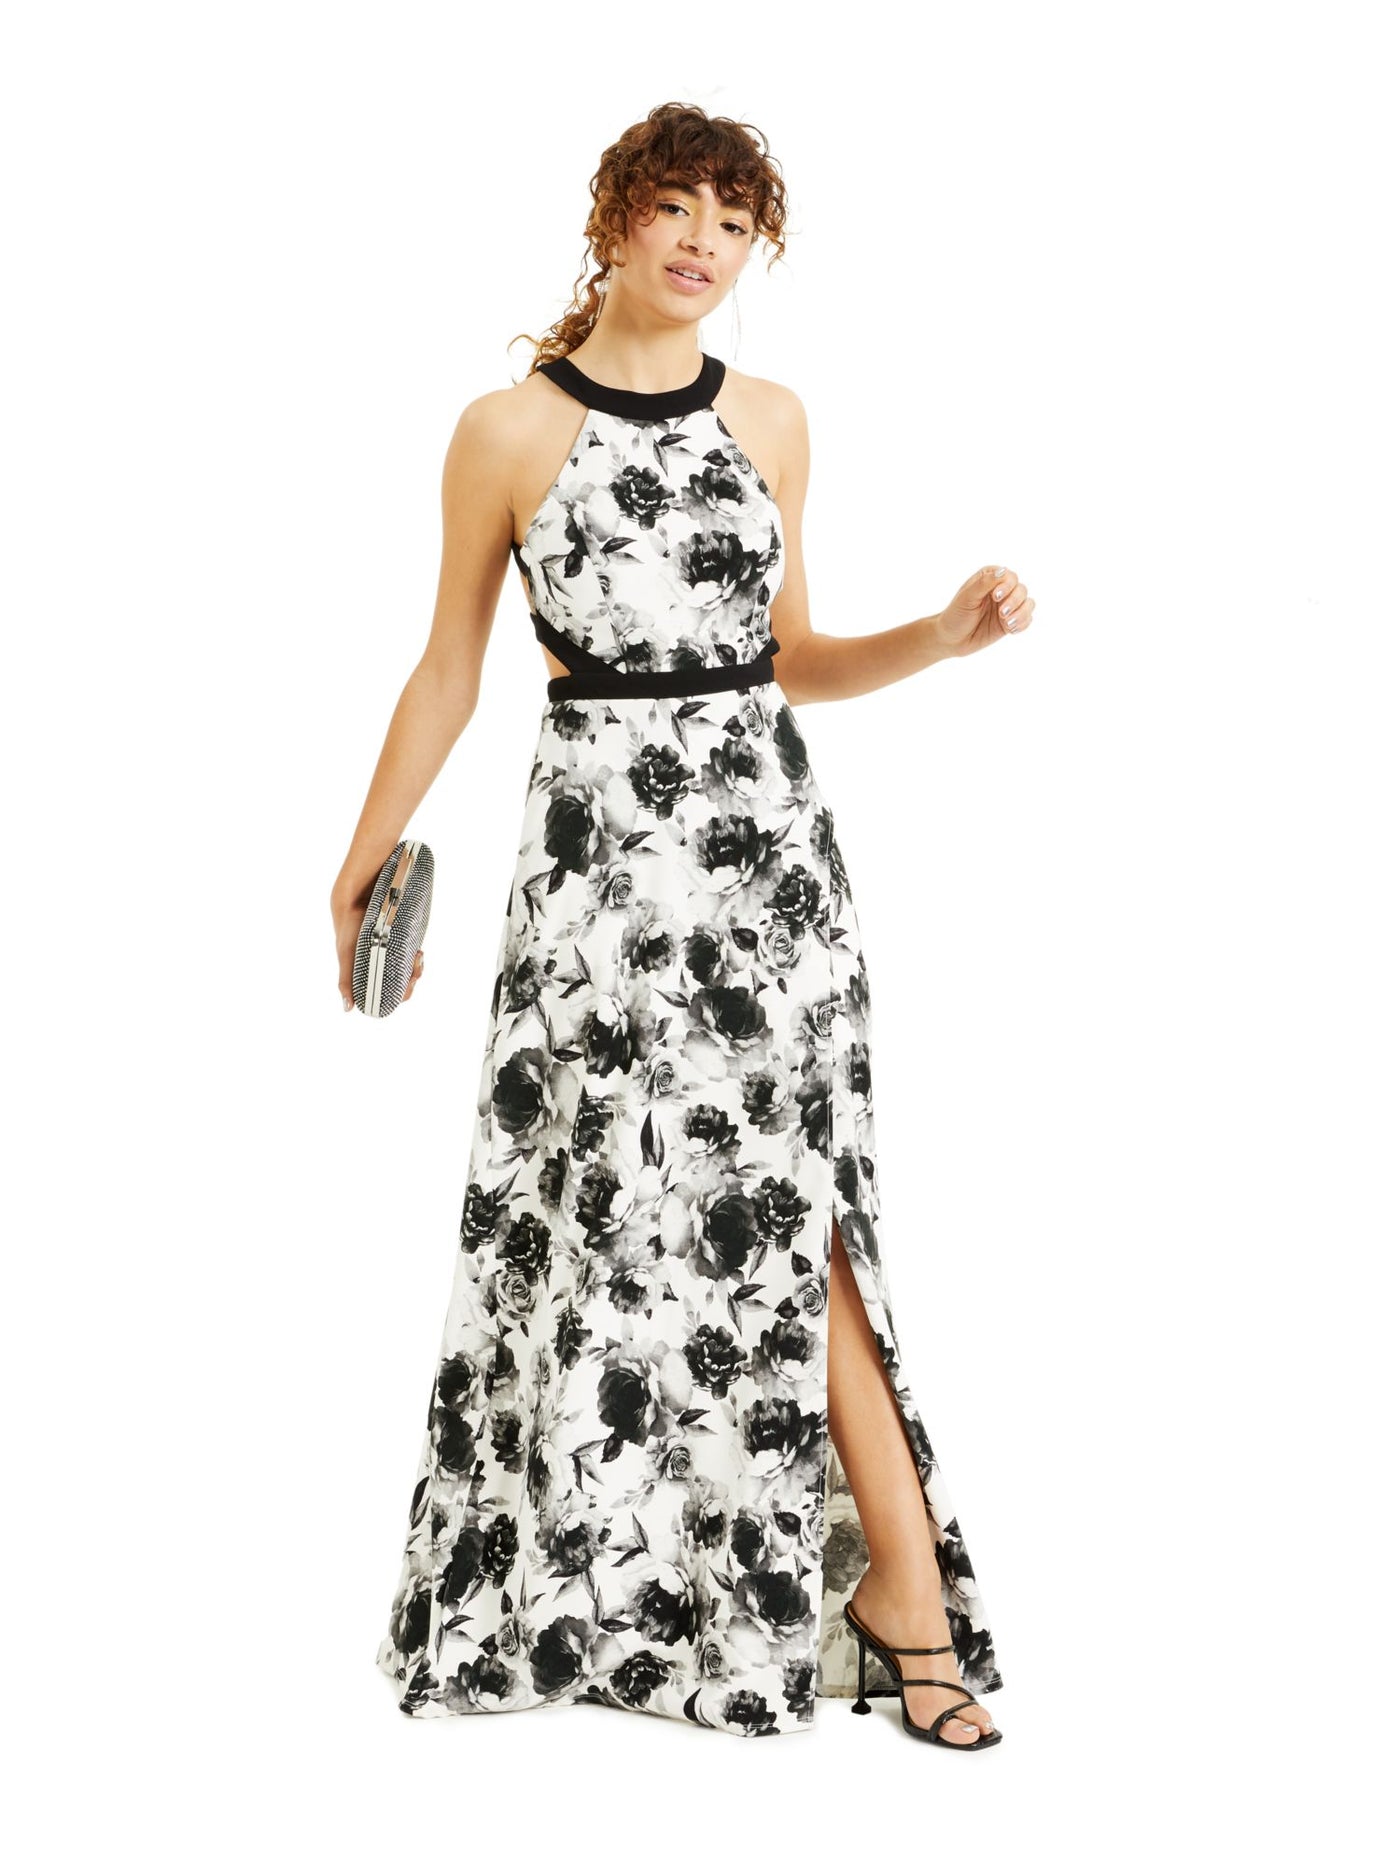 SPEECHLESS Womens Black Slitted Gown Floral Sleeveless Halter Full-Length Prom Dress 0